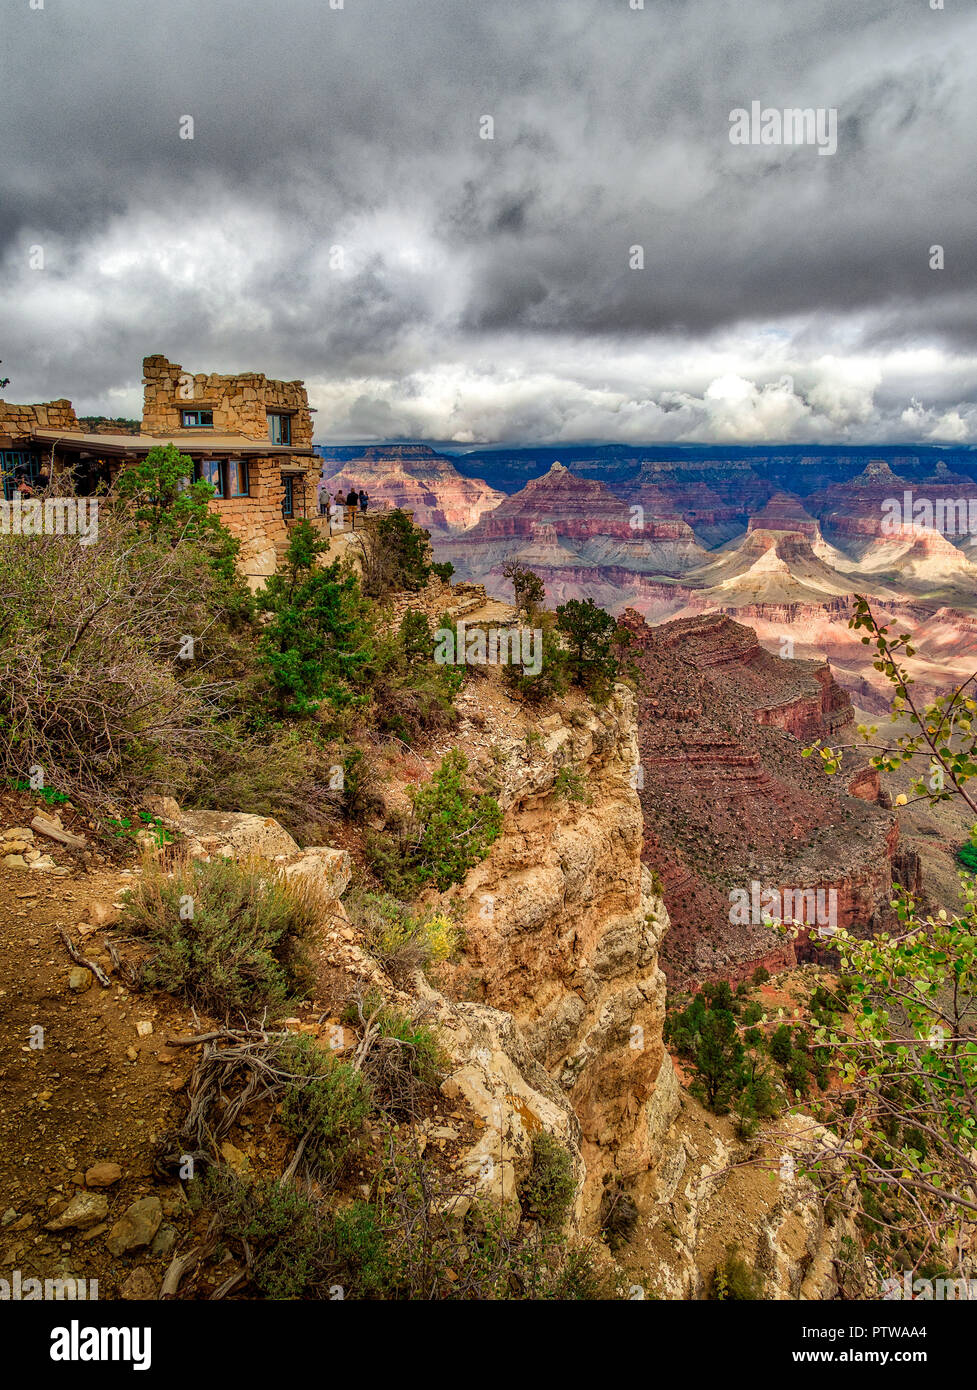 Original Fotograf Studio am Grand Canyon - als Fotografie Punkt für Besucher in den frühen 2Oth Century verwendet Stockfoto